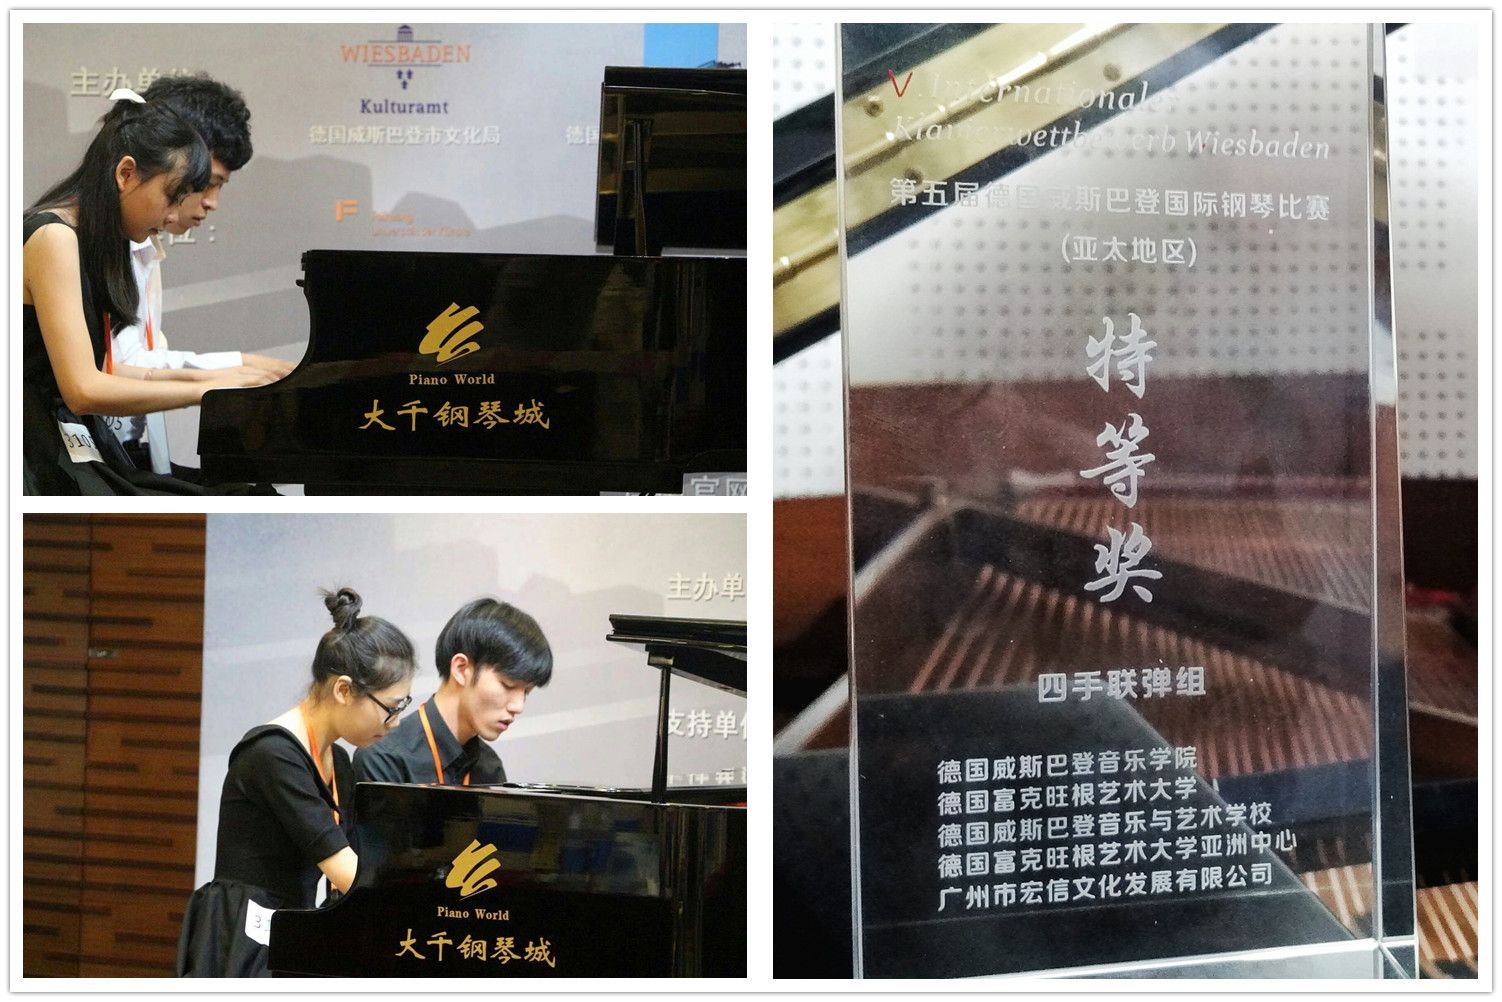 音乐学院学生获国际钢琴比赛特等奖